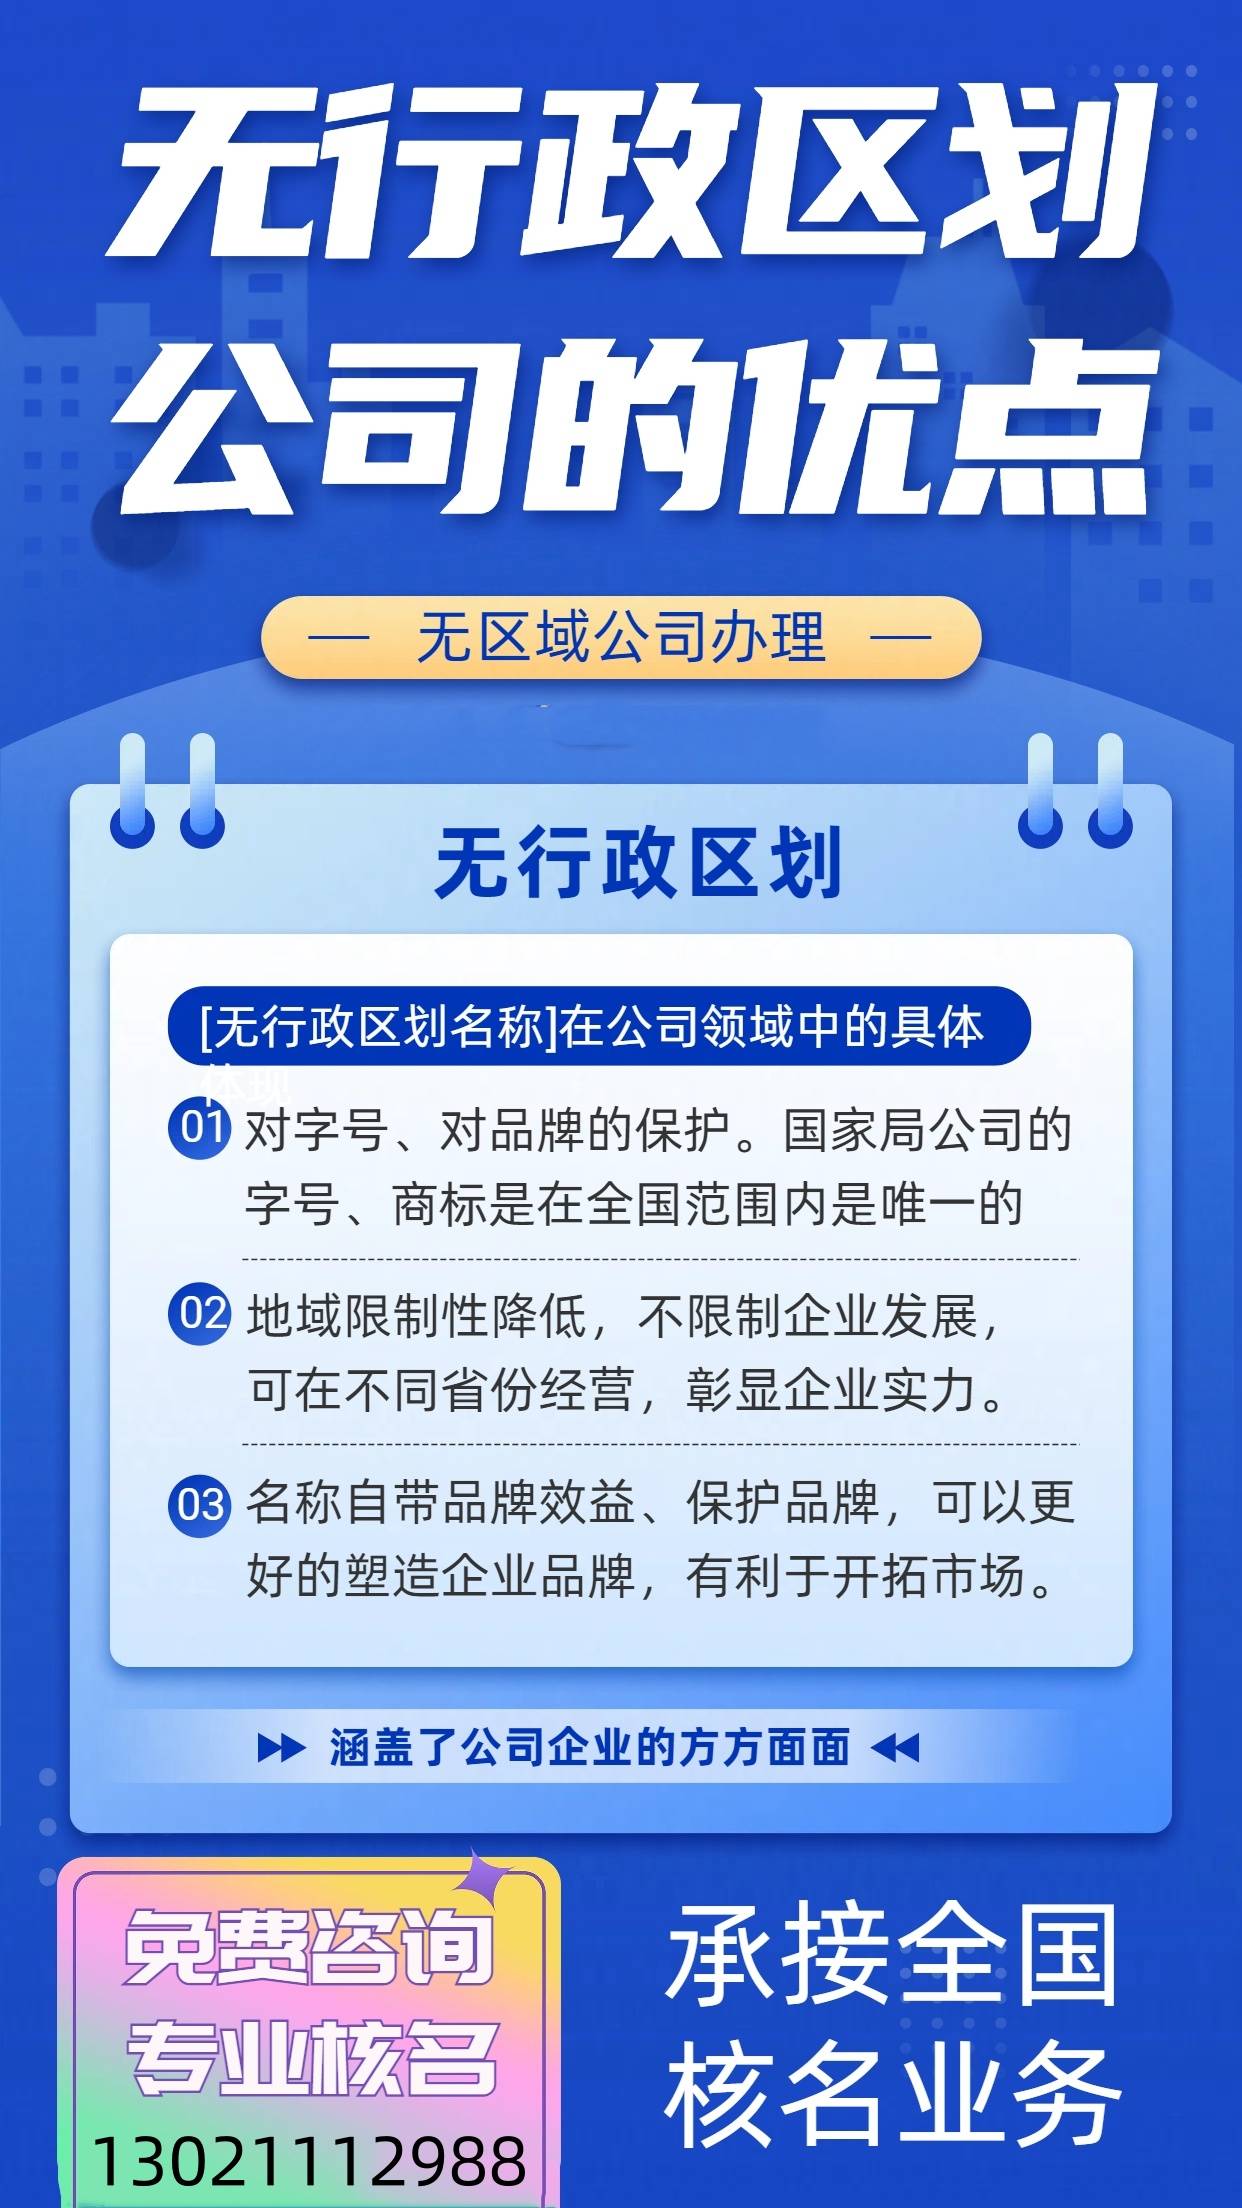   北京国际旅行社转让出境资格 